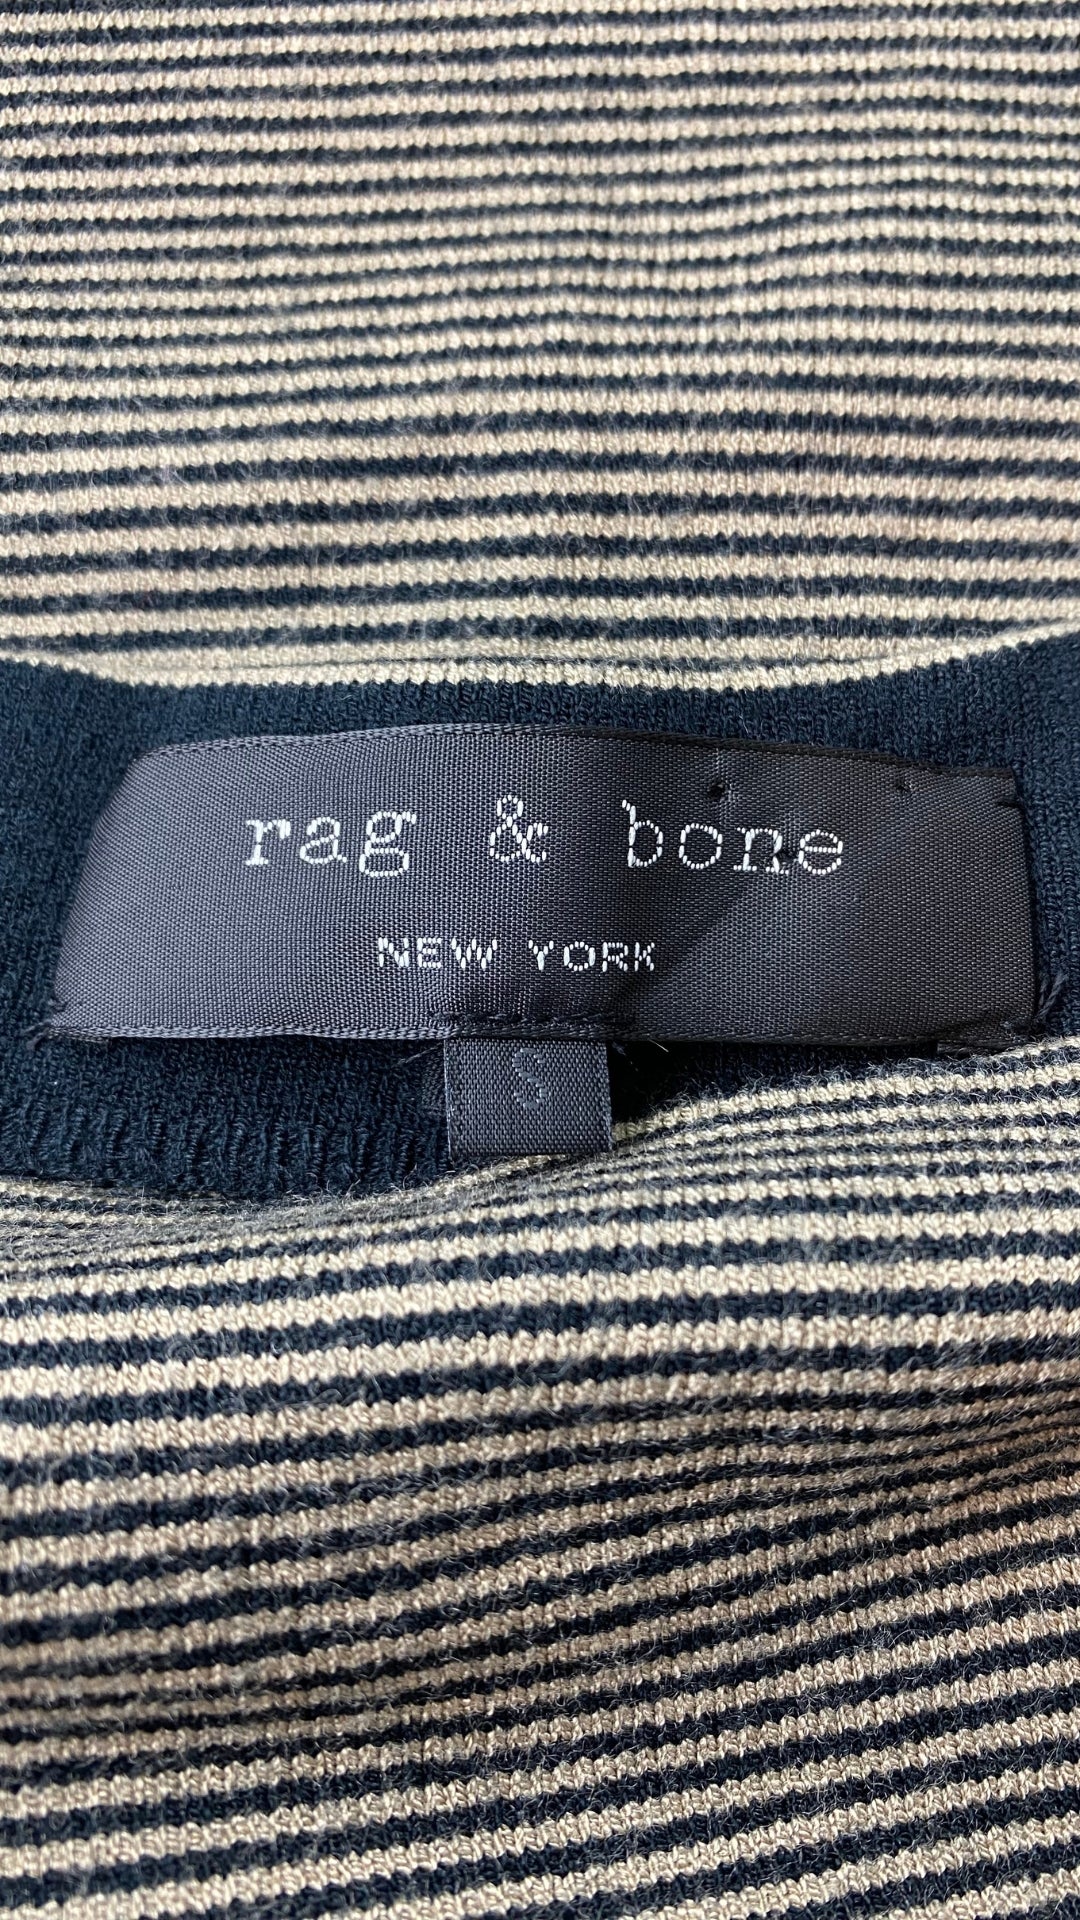 Robe ajustée en tricot à rayures Rag & Bone, taille small. Vue de l'étiquette de marque et taille.